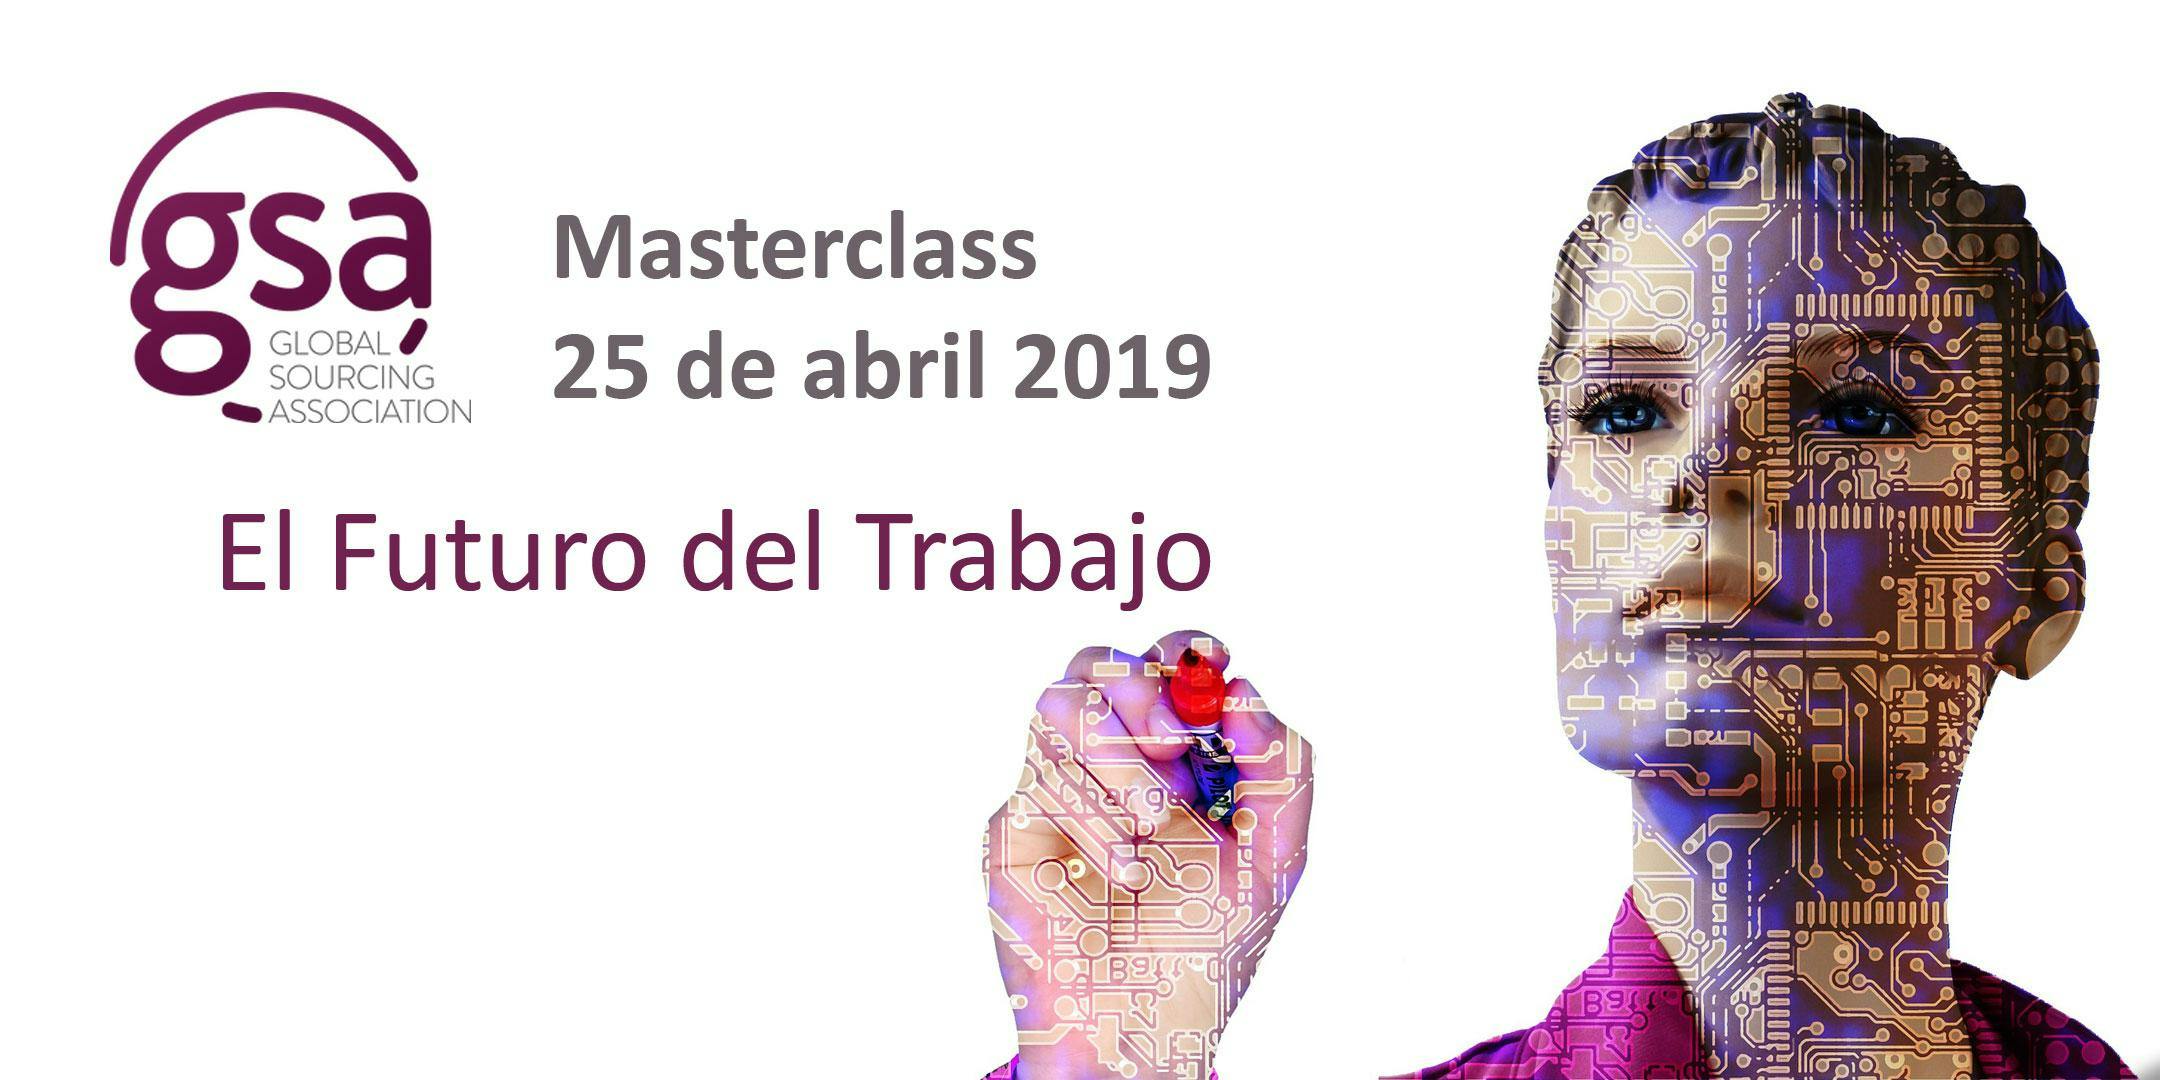 GSA España Masterclass 25/04/2019: El Futuro del Trabajo